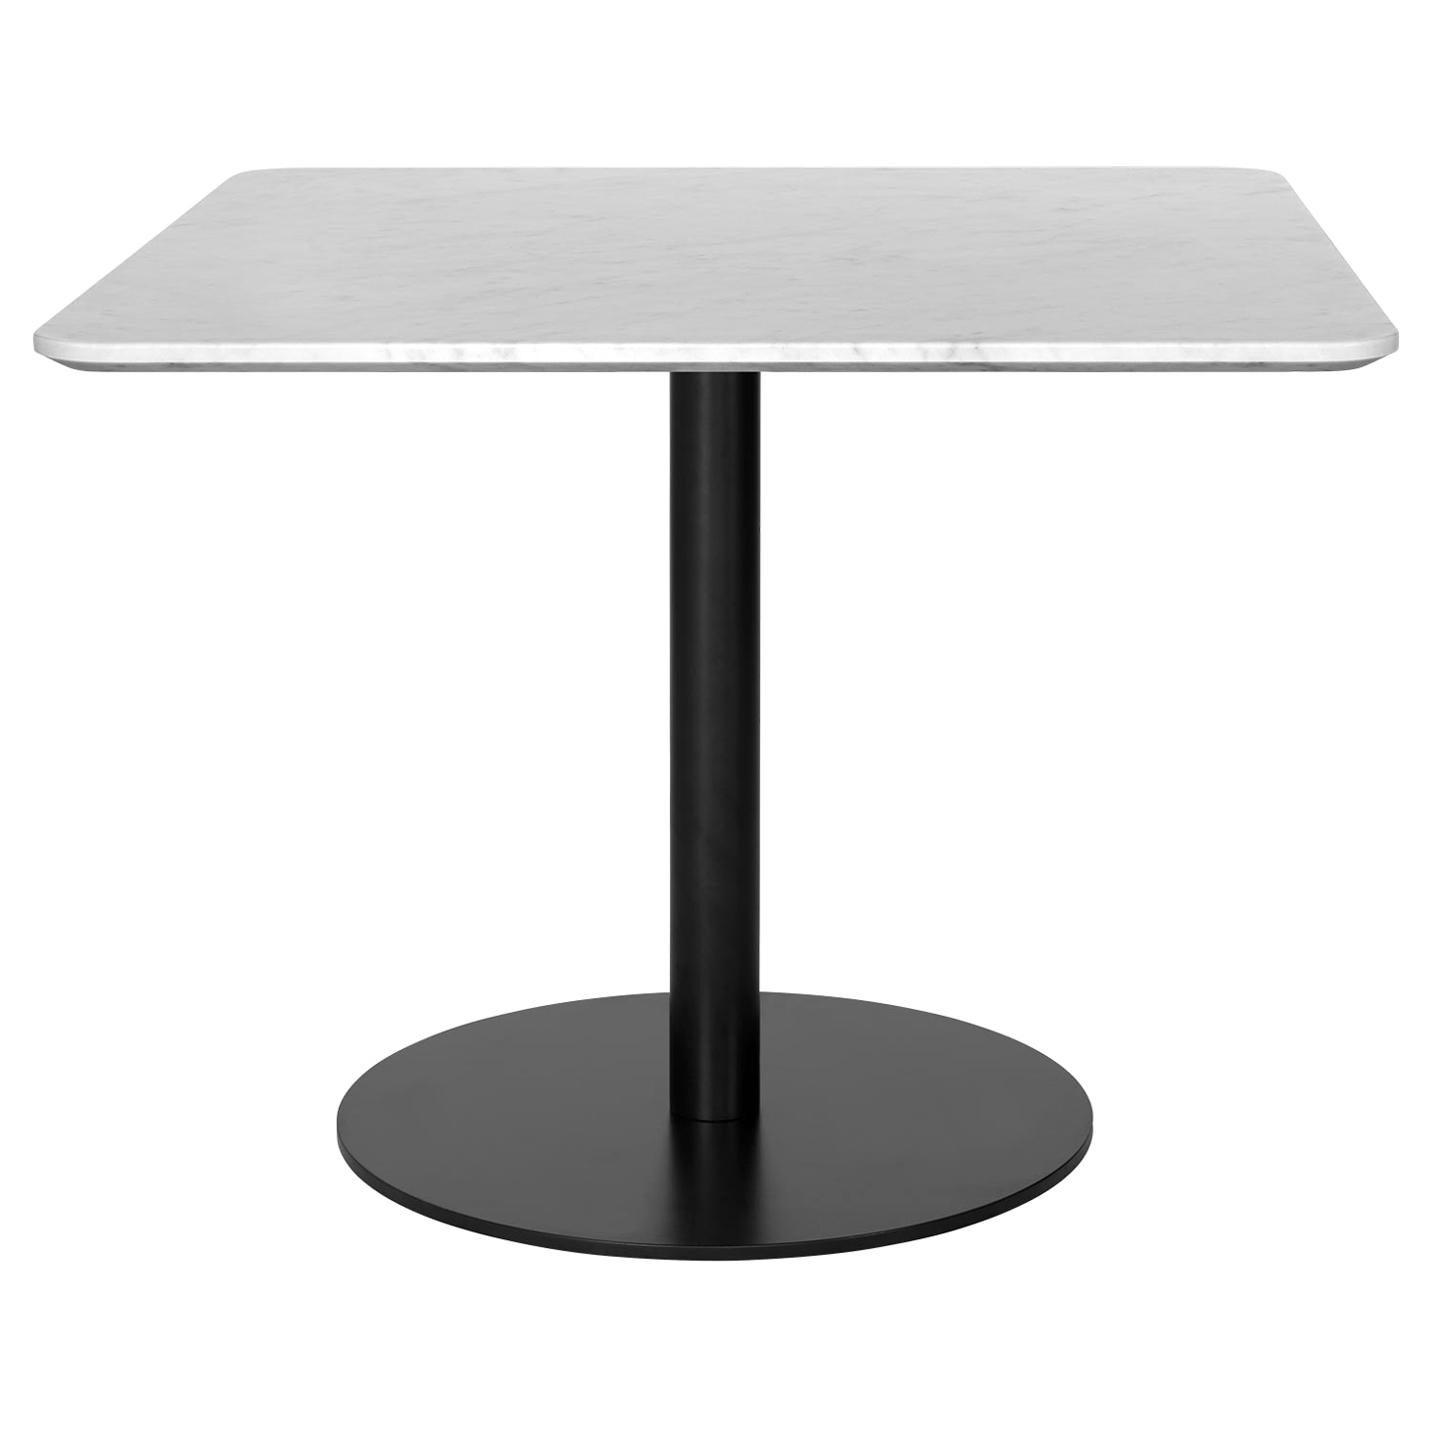 1.0 Loungetisch, quadratisch, runder schwarzer Sockel, mittelgroß, Glas